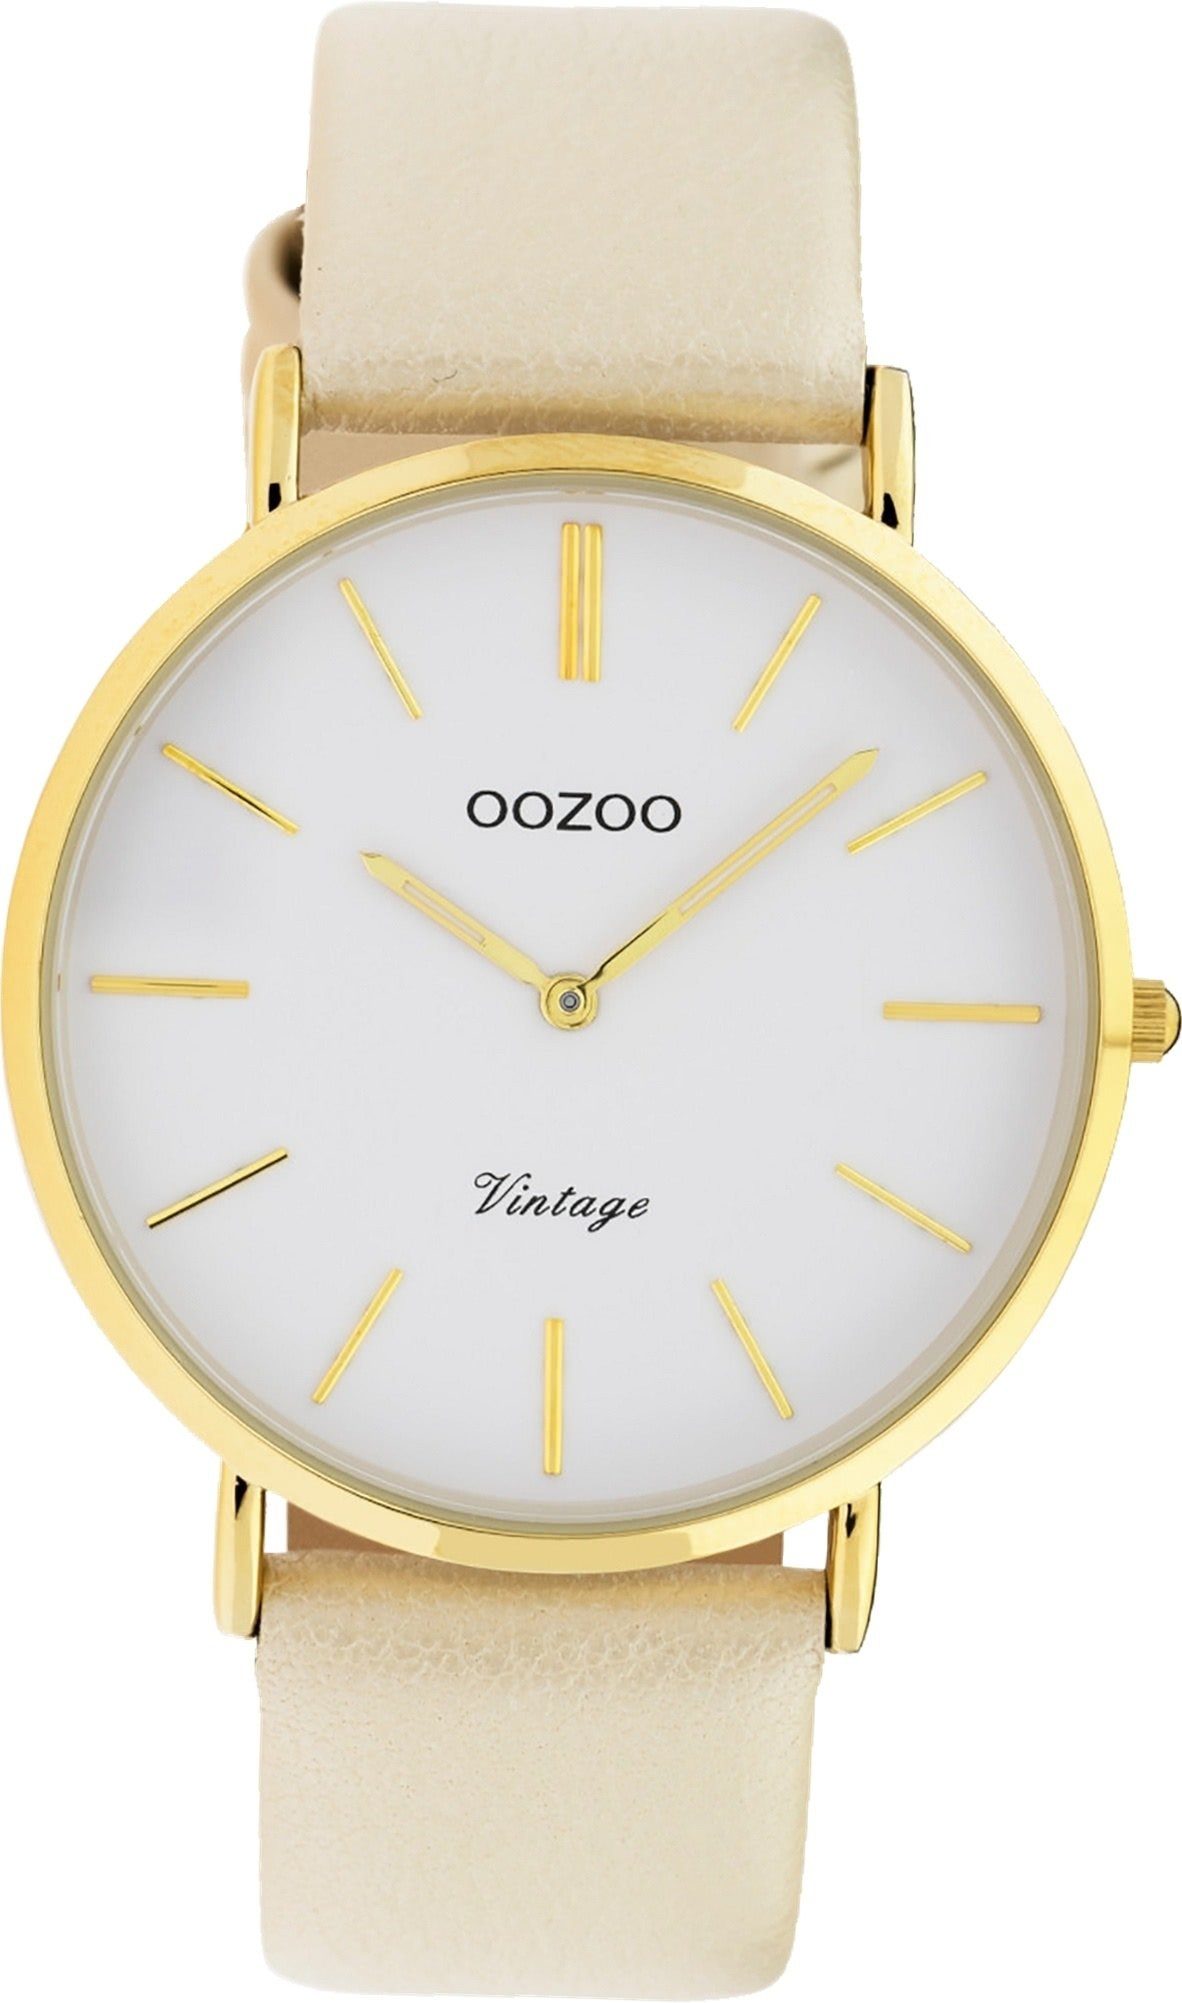 OOZOO Quarzuhr Oozoo (ca. groß 40mm) Damen Gehäuse, Analog, creme, Leder C9961 Damenuhr rundes Uhr Lederarmband